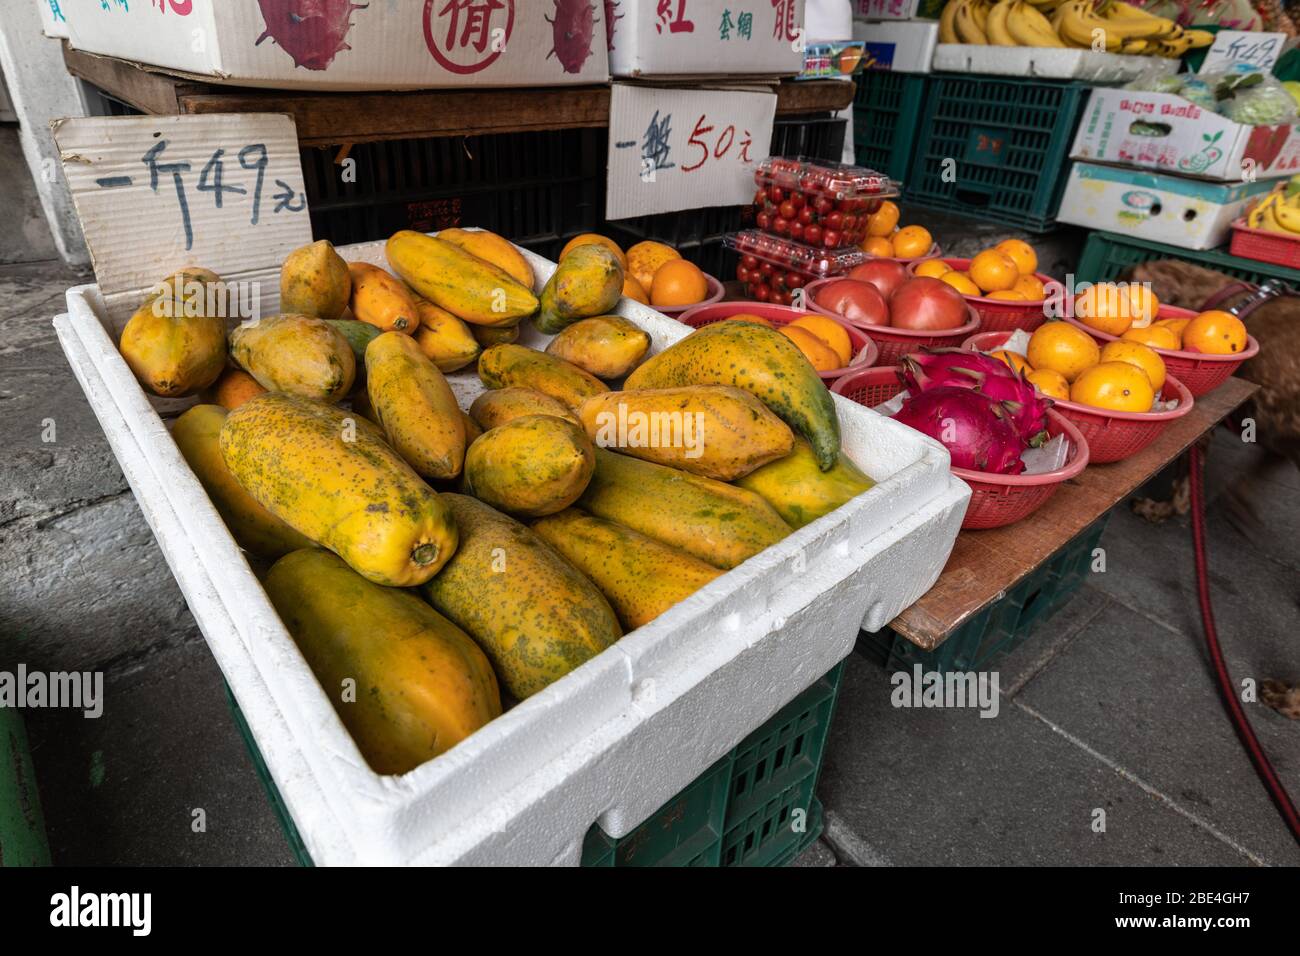 Fruits exposés à un vendeur de fruits à Taipei : papaye, persimmons, fruits du dragon, oranges, tomates, tomates cerises, bananes. Banque D'Images